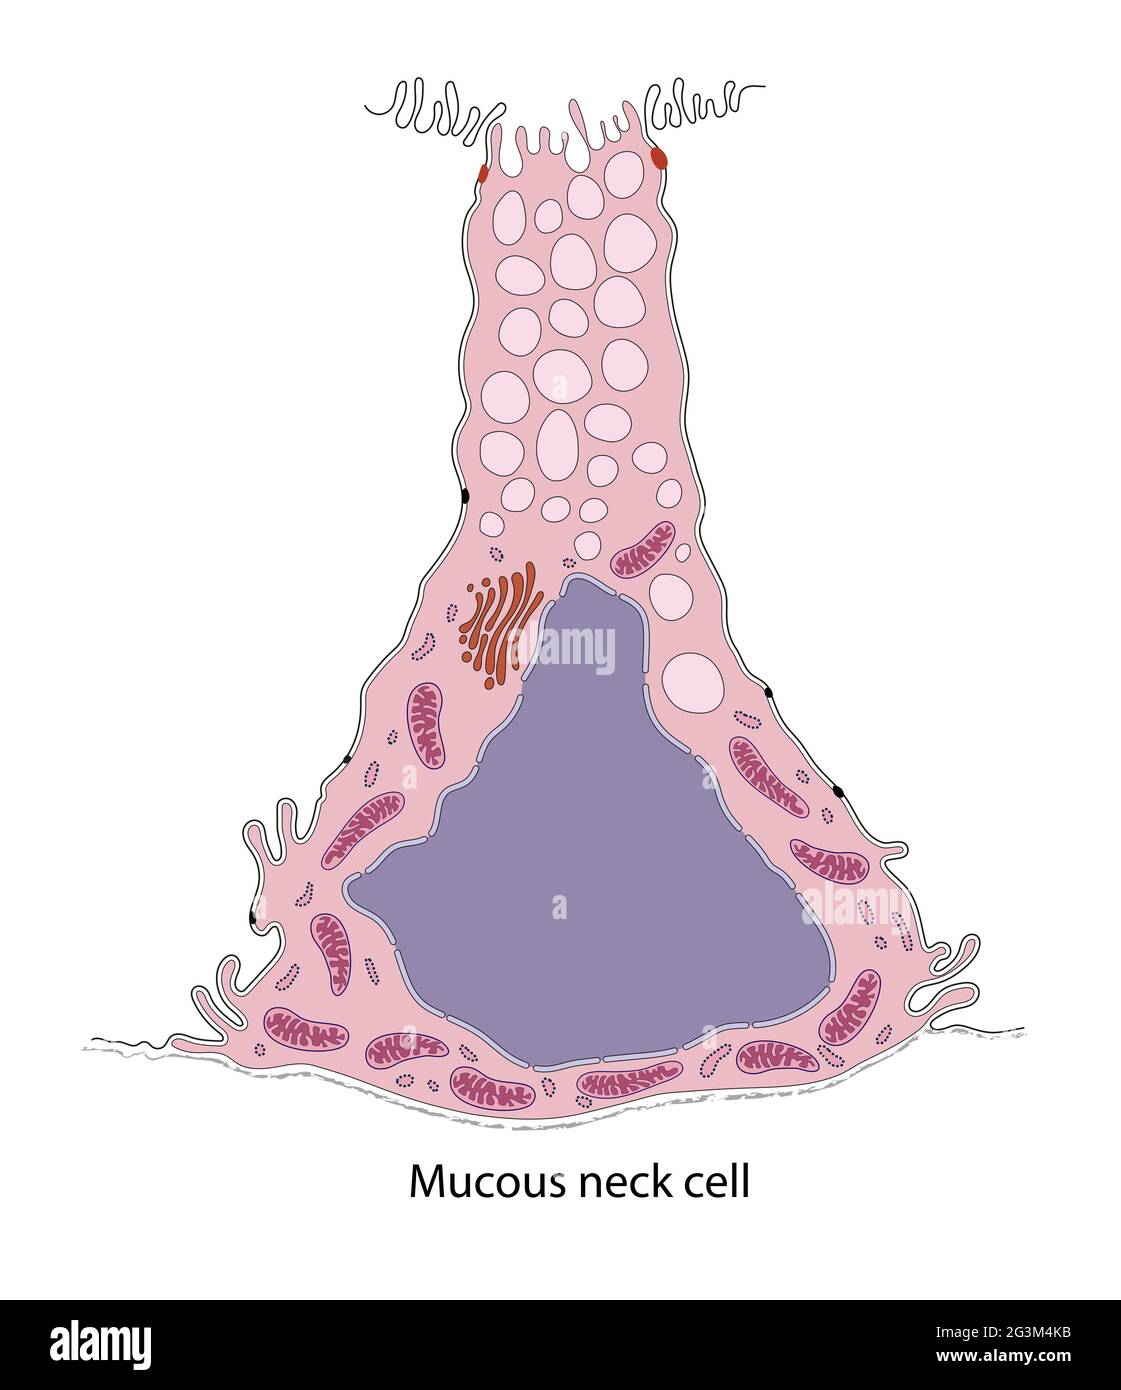 Diagrama de la célula mucosa gástrica del cuello Foto de stock